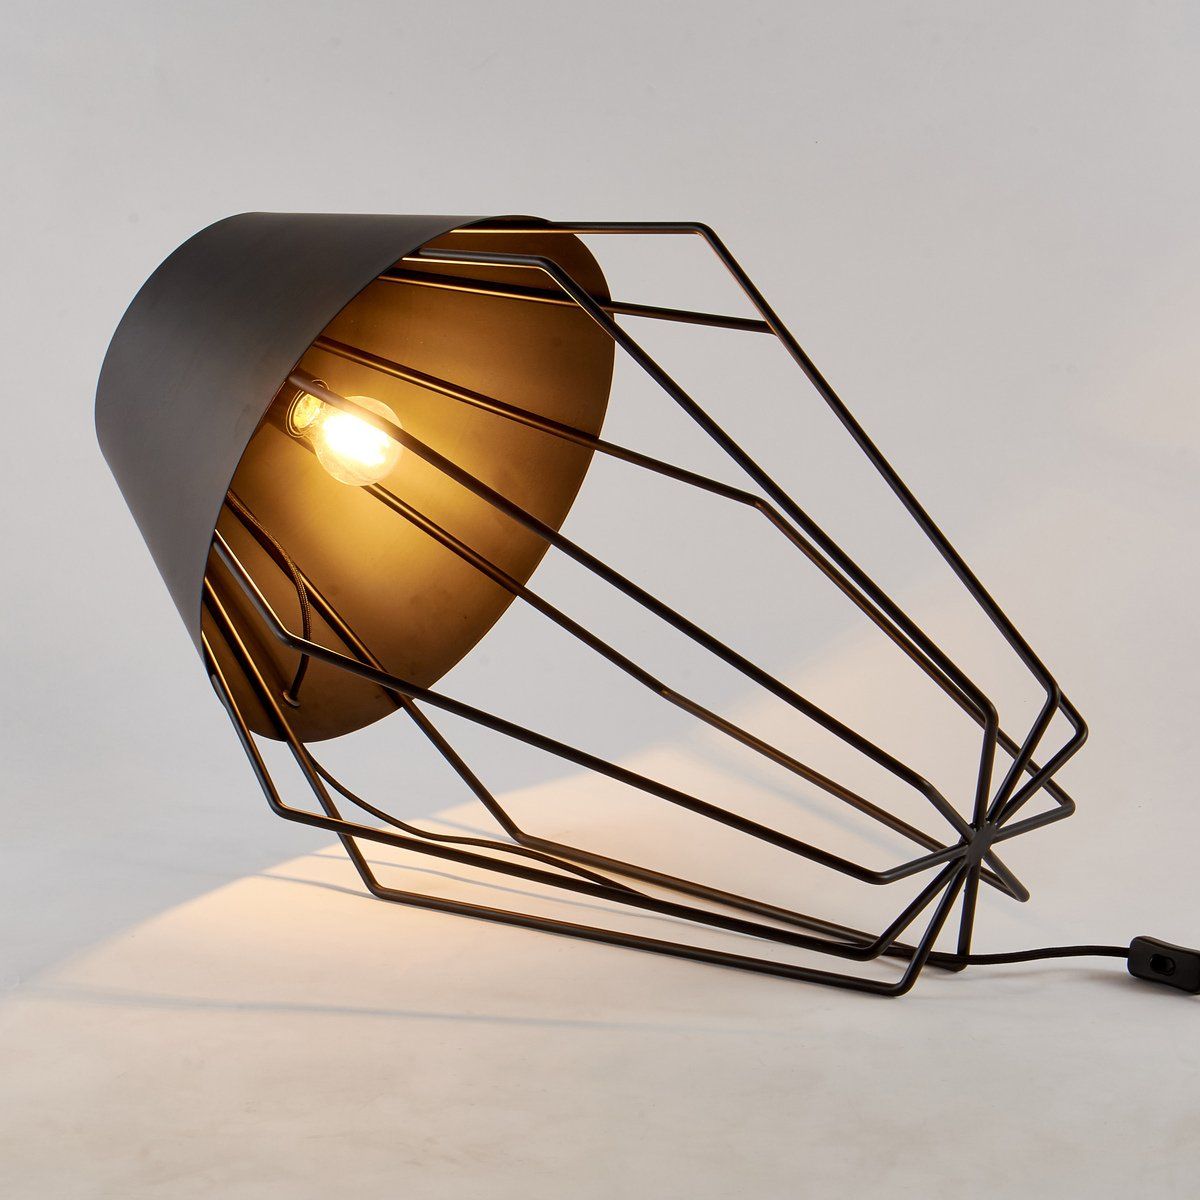 Lampe à poser design CRAFTY en métal noir mat